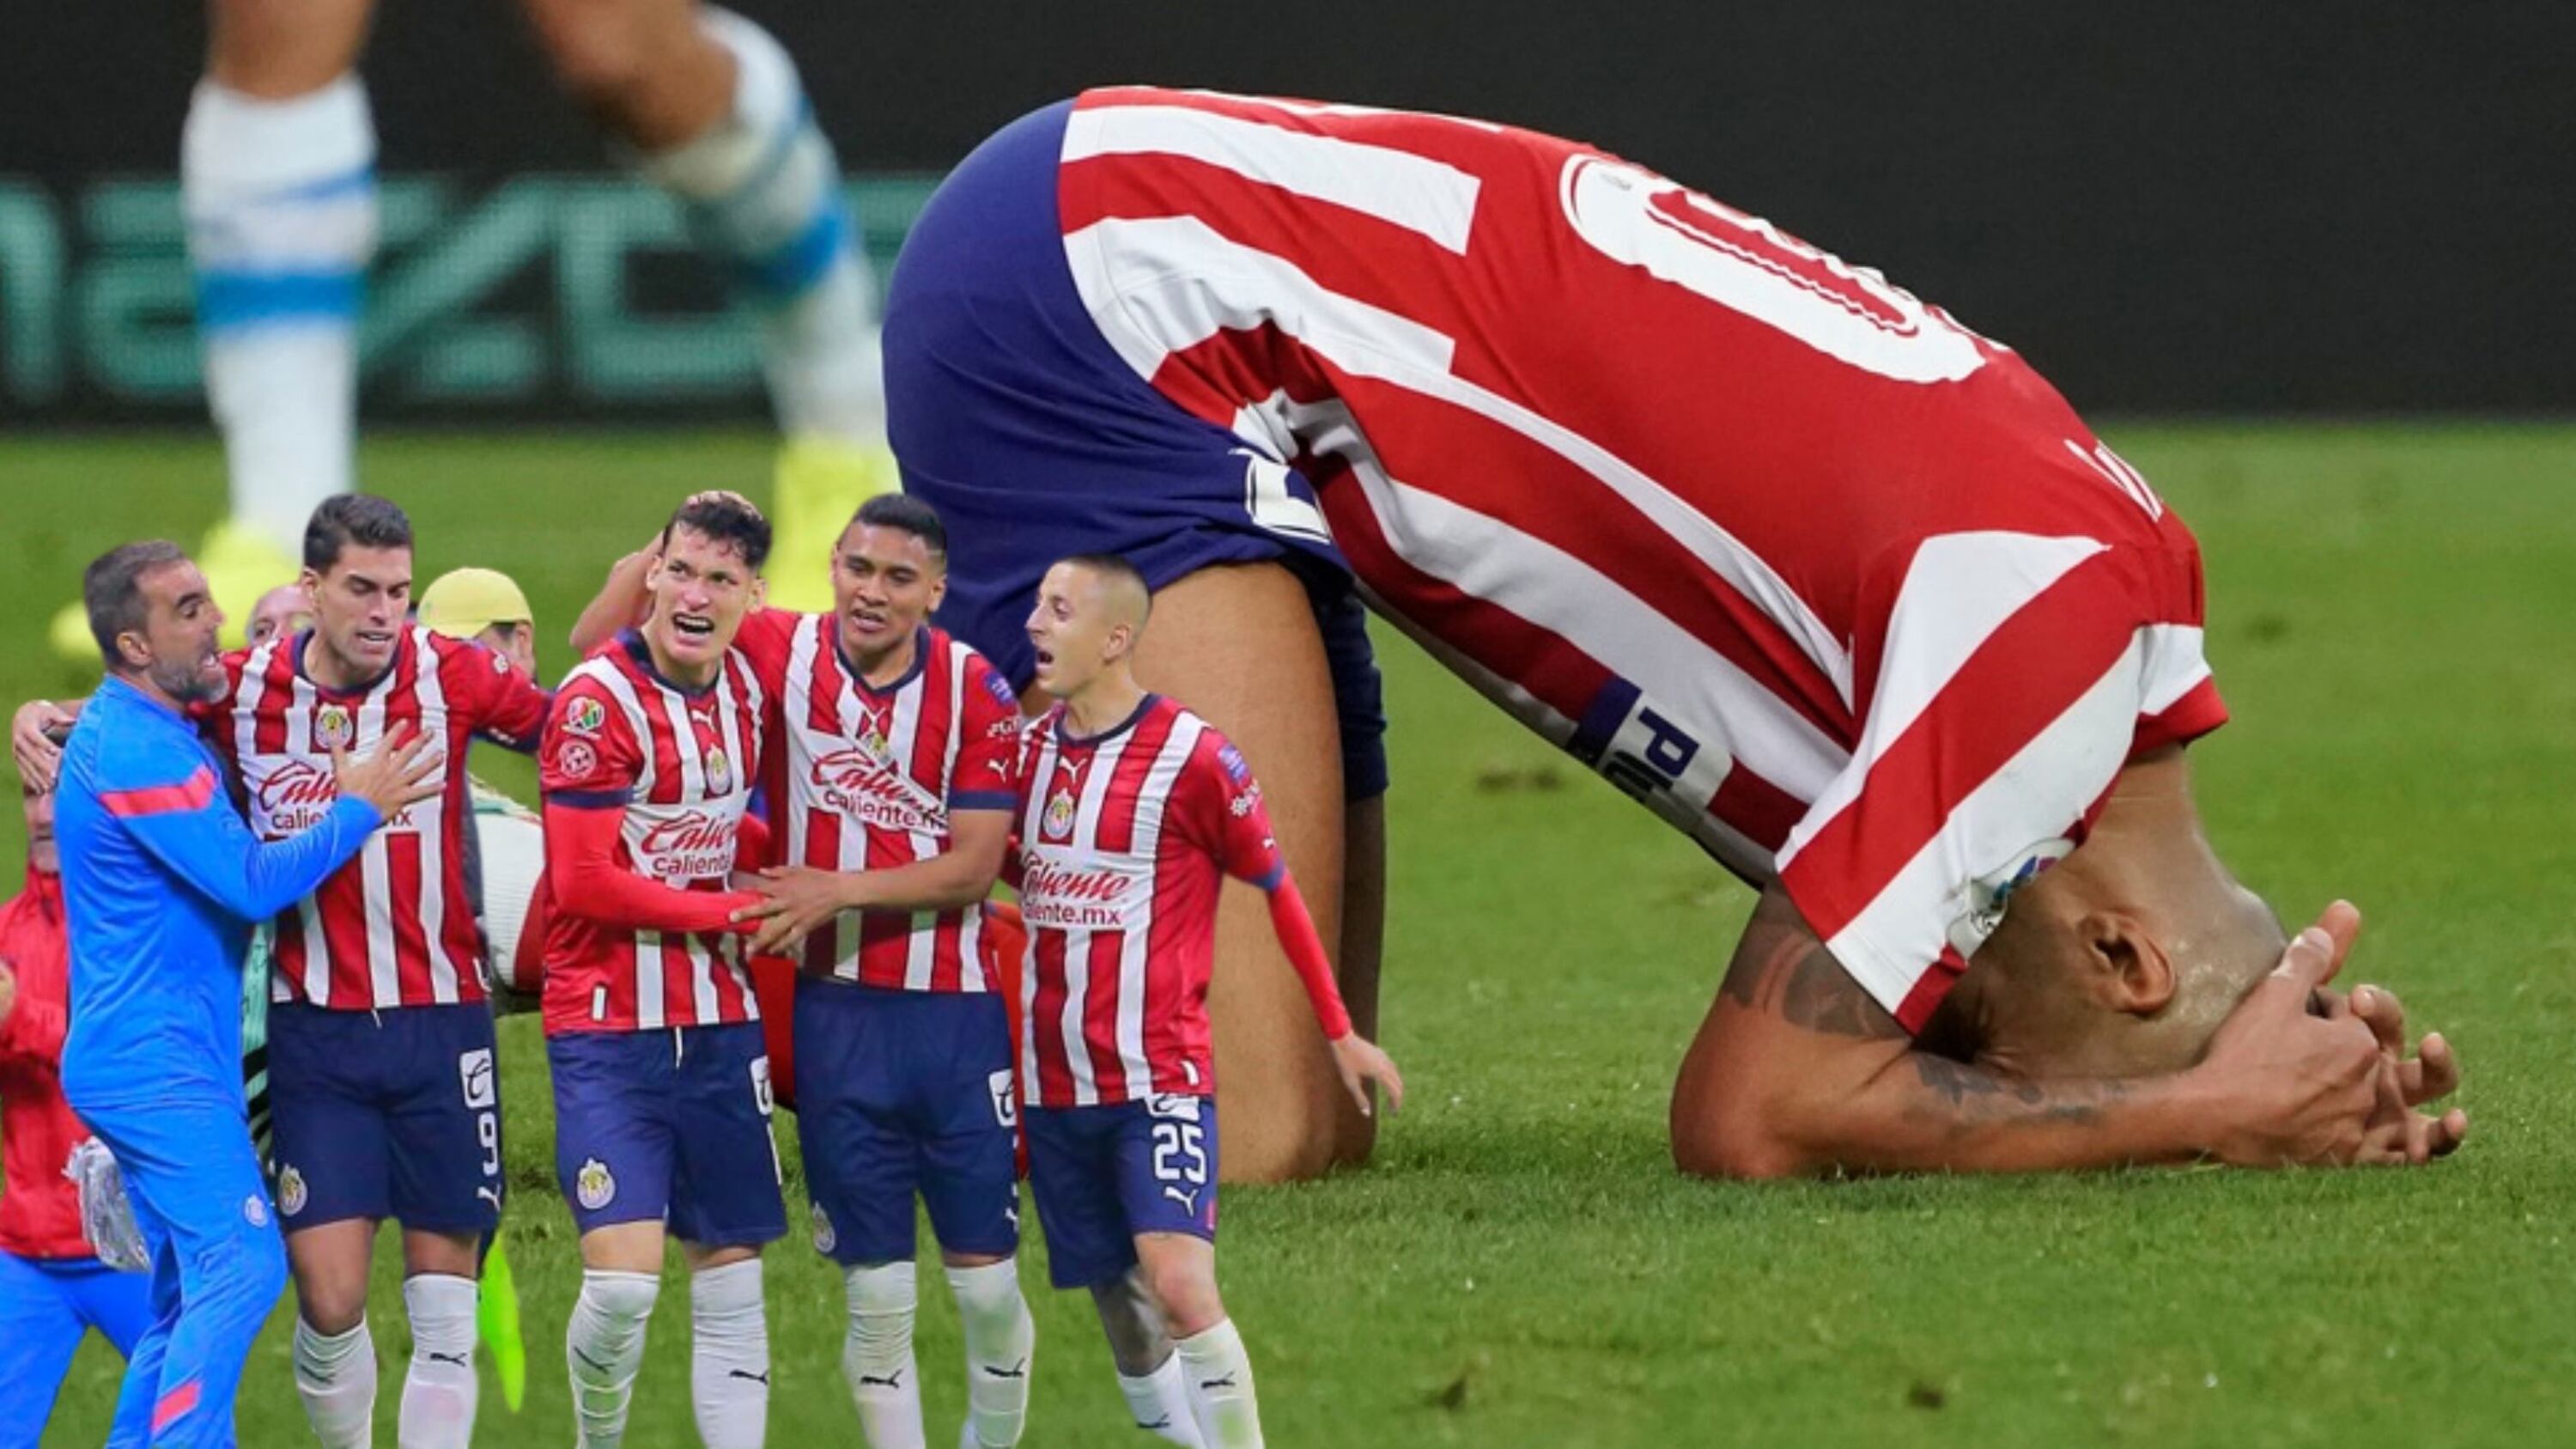 Le hizo un gol al Atlético de Madrid, Chivas tiene una joya para despertar al Gigante